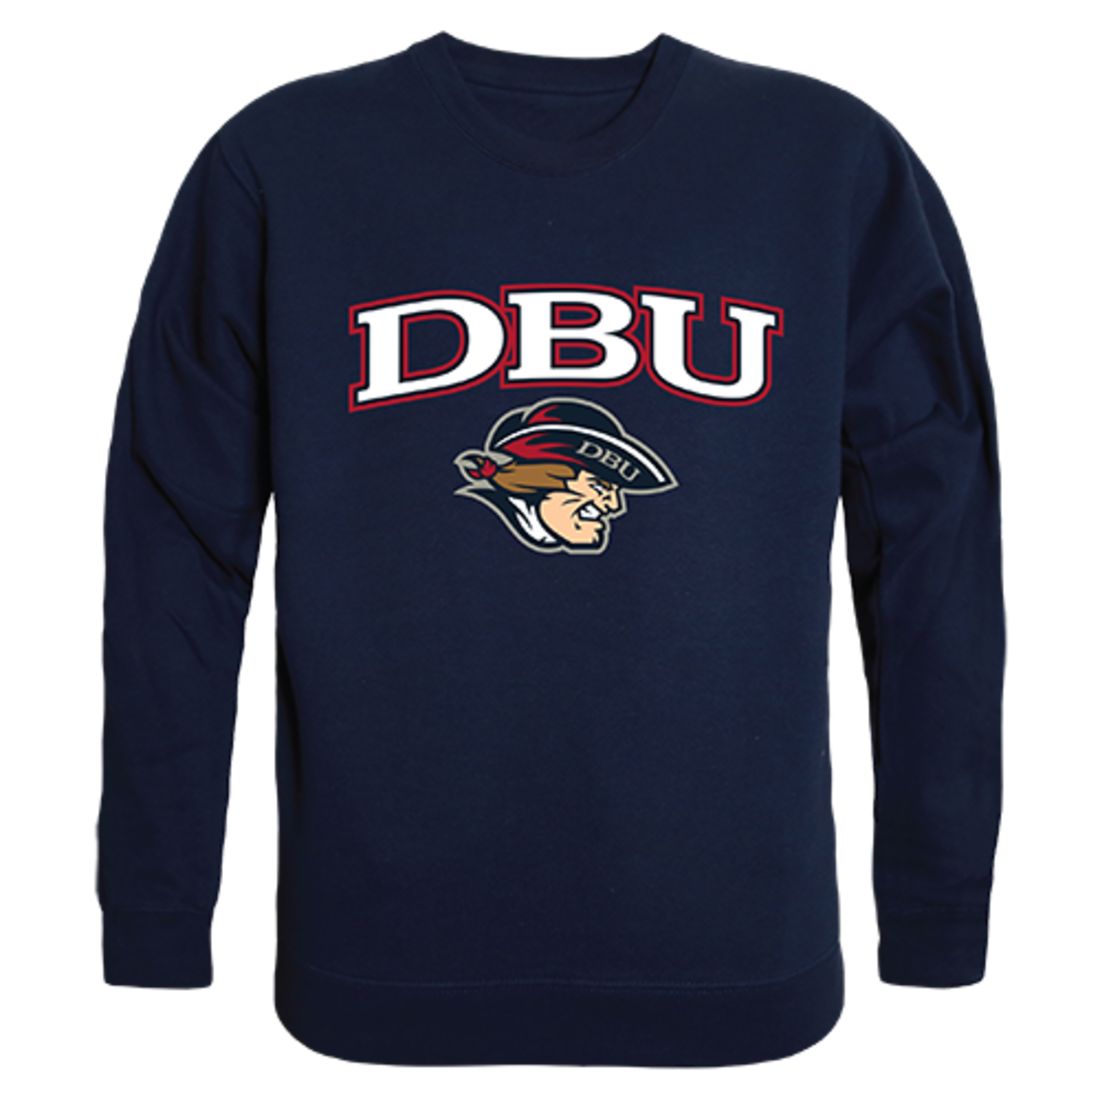 DBU Dallas Baptist University Campus Crewneck Pullover Sweatshirt Sweater Navy-Campus-Wardrobe